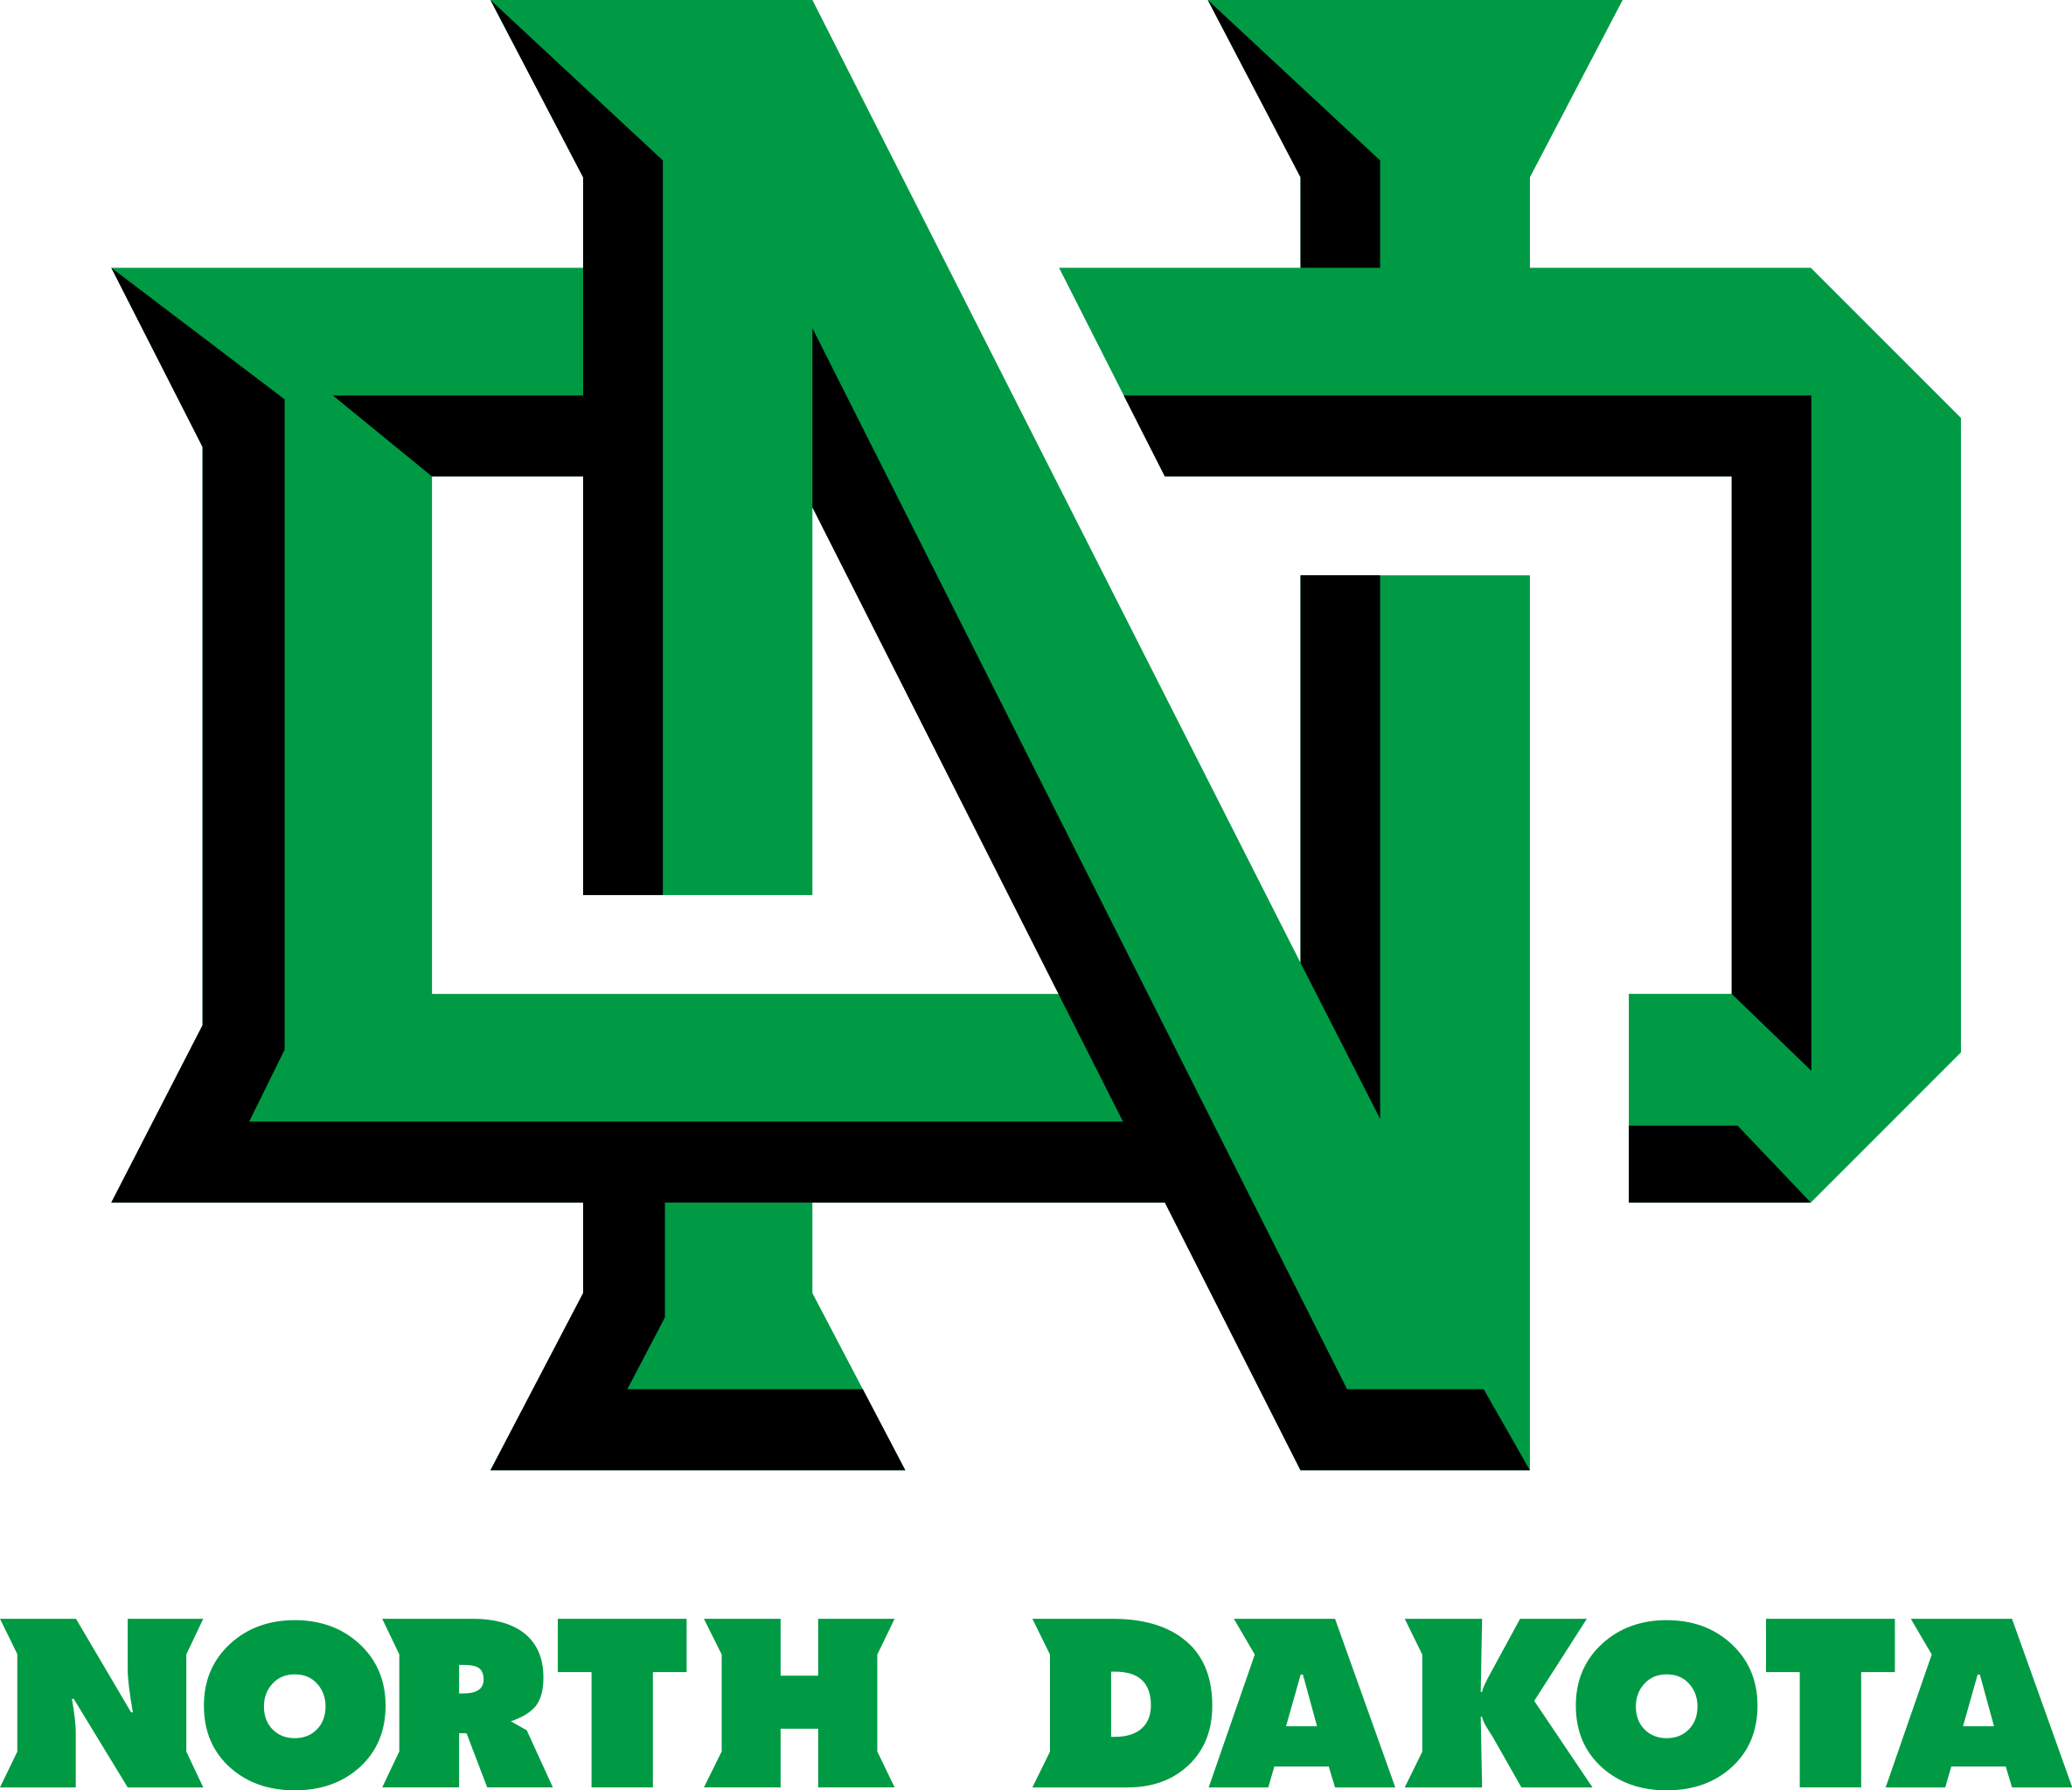 University_of_North_Dakota_logo_-_interlocking_ND.svg